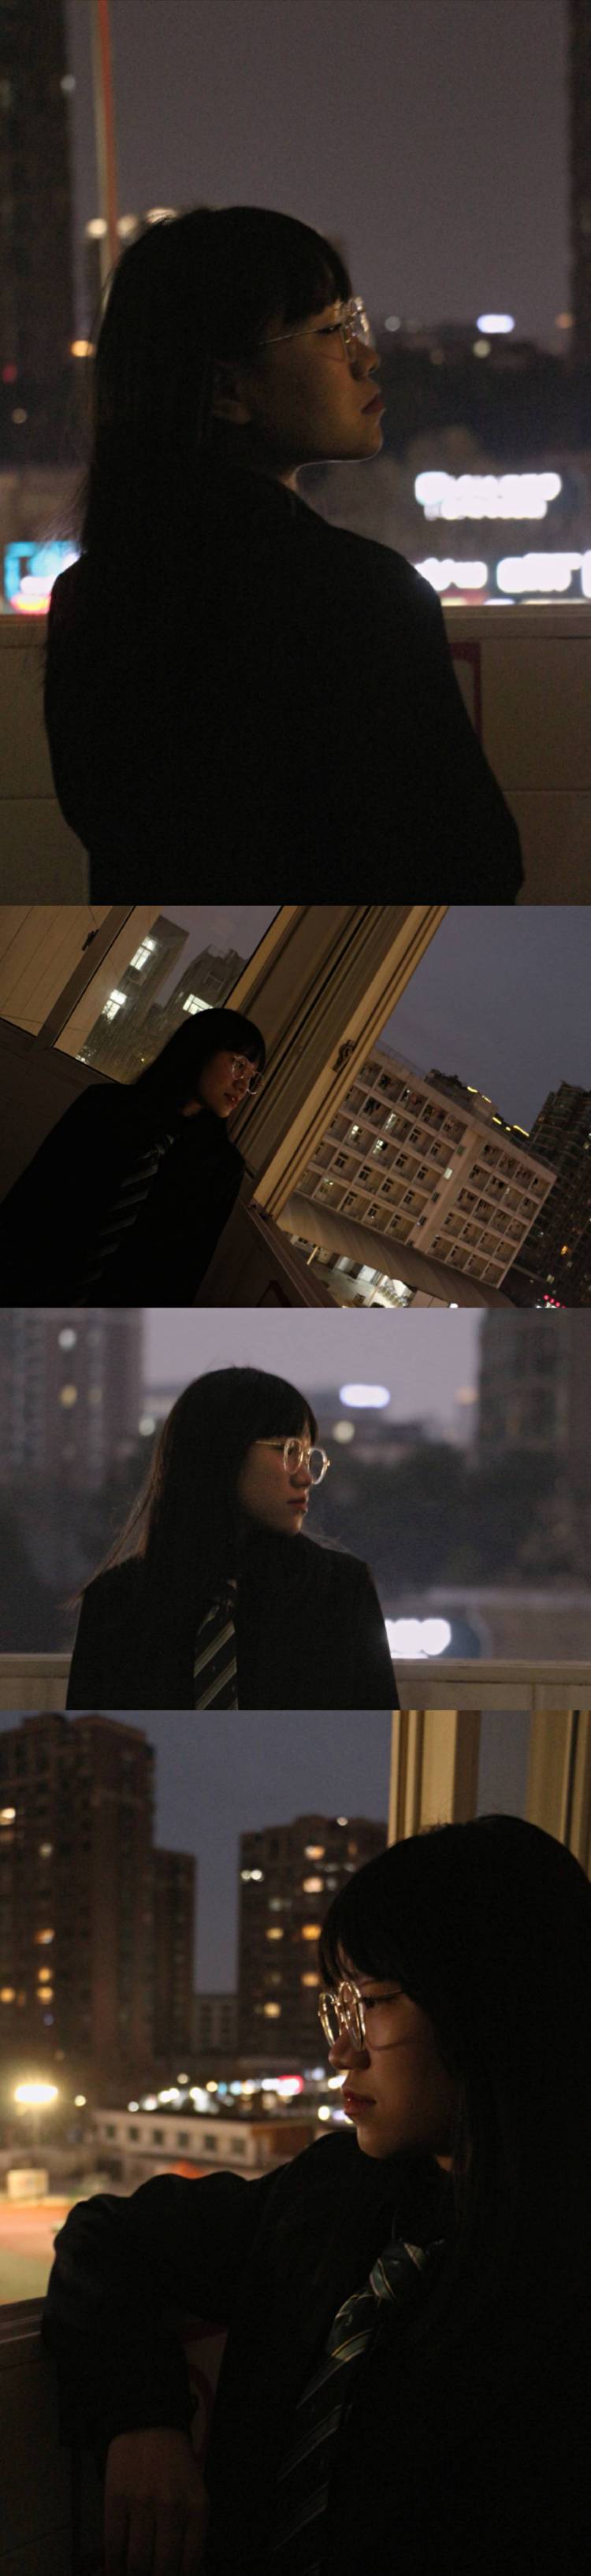 tdl-MP-浙江省·宁波市·江北区--约拍摄影师，妹摄一枚。
在我的镜头下，任何人会闪闪发光。
并且我修图技术很nice哟～
快来我沟通你想要的风格呐。